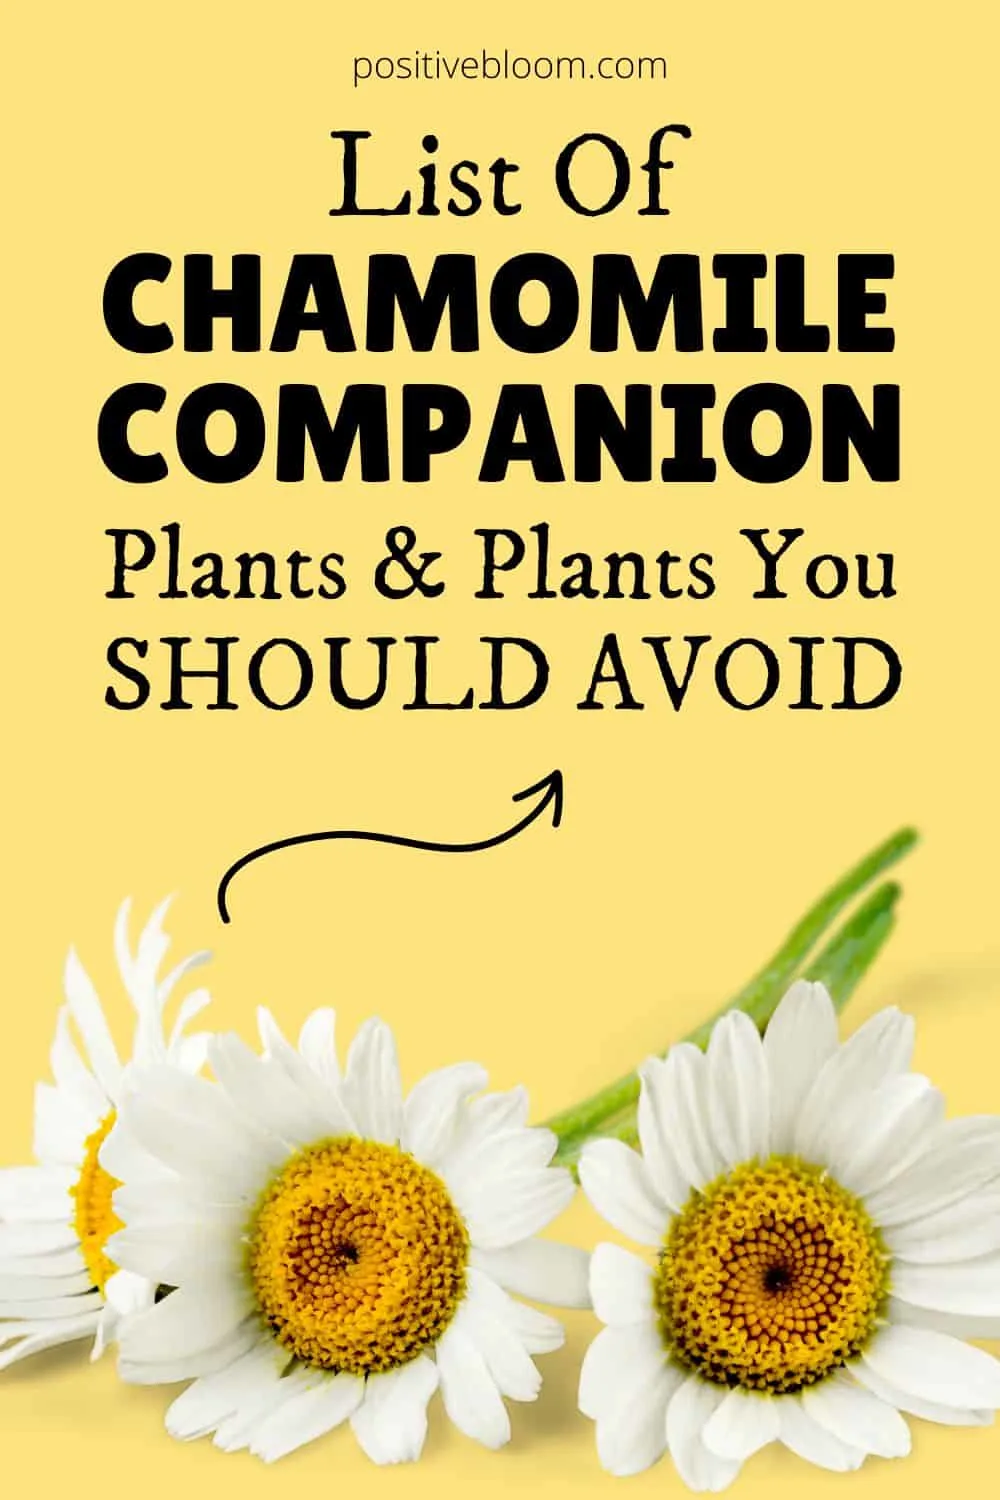 List Of Chamomile Companion Plants & Plants You Should Avoid Pinterest